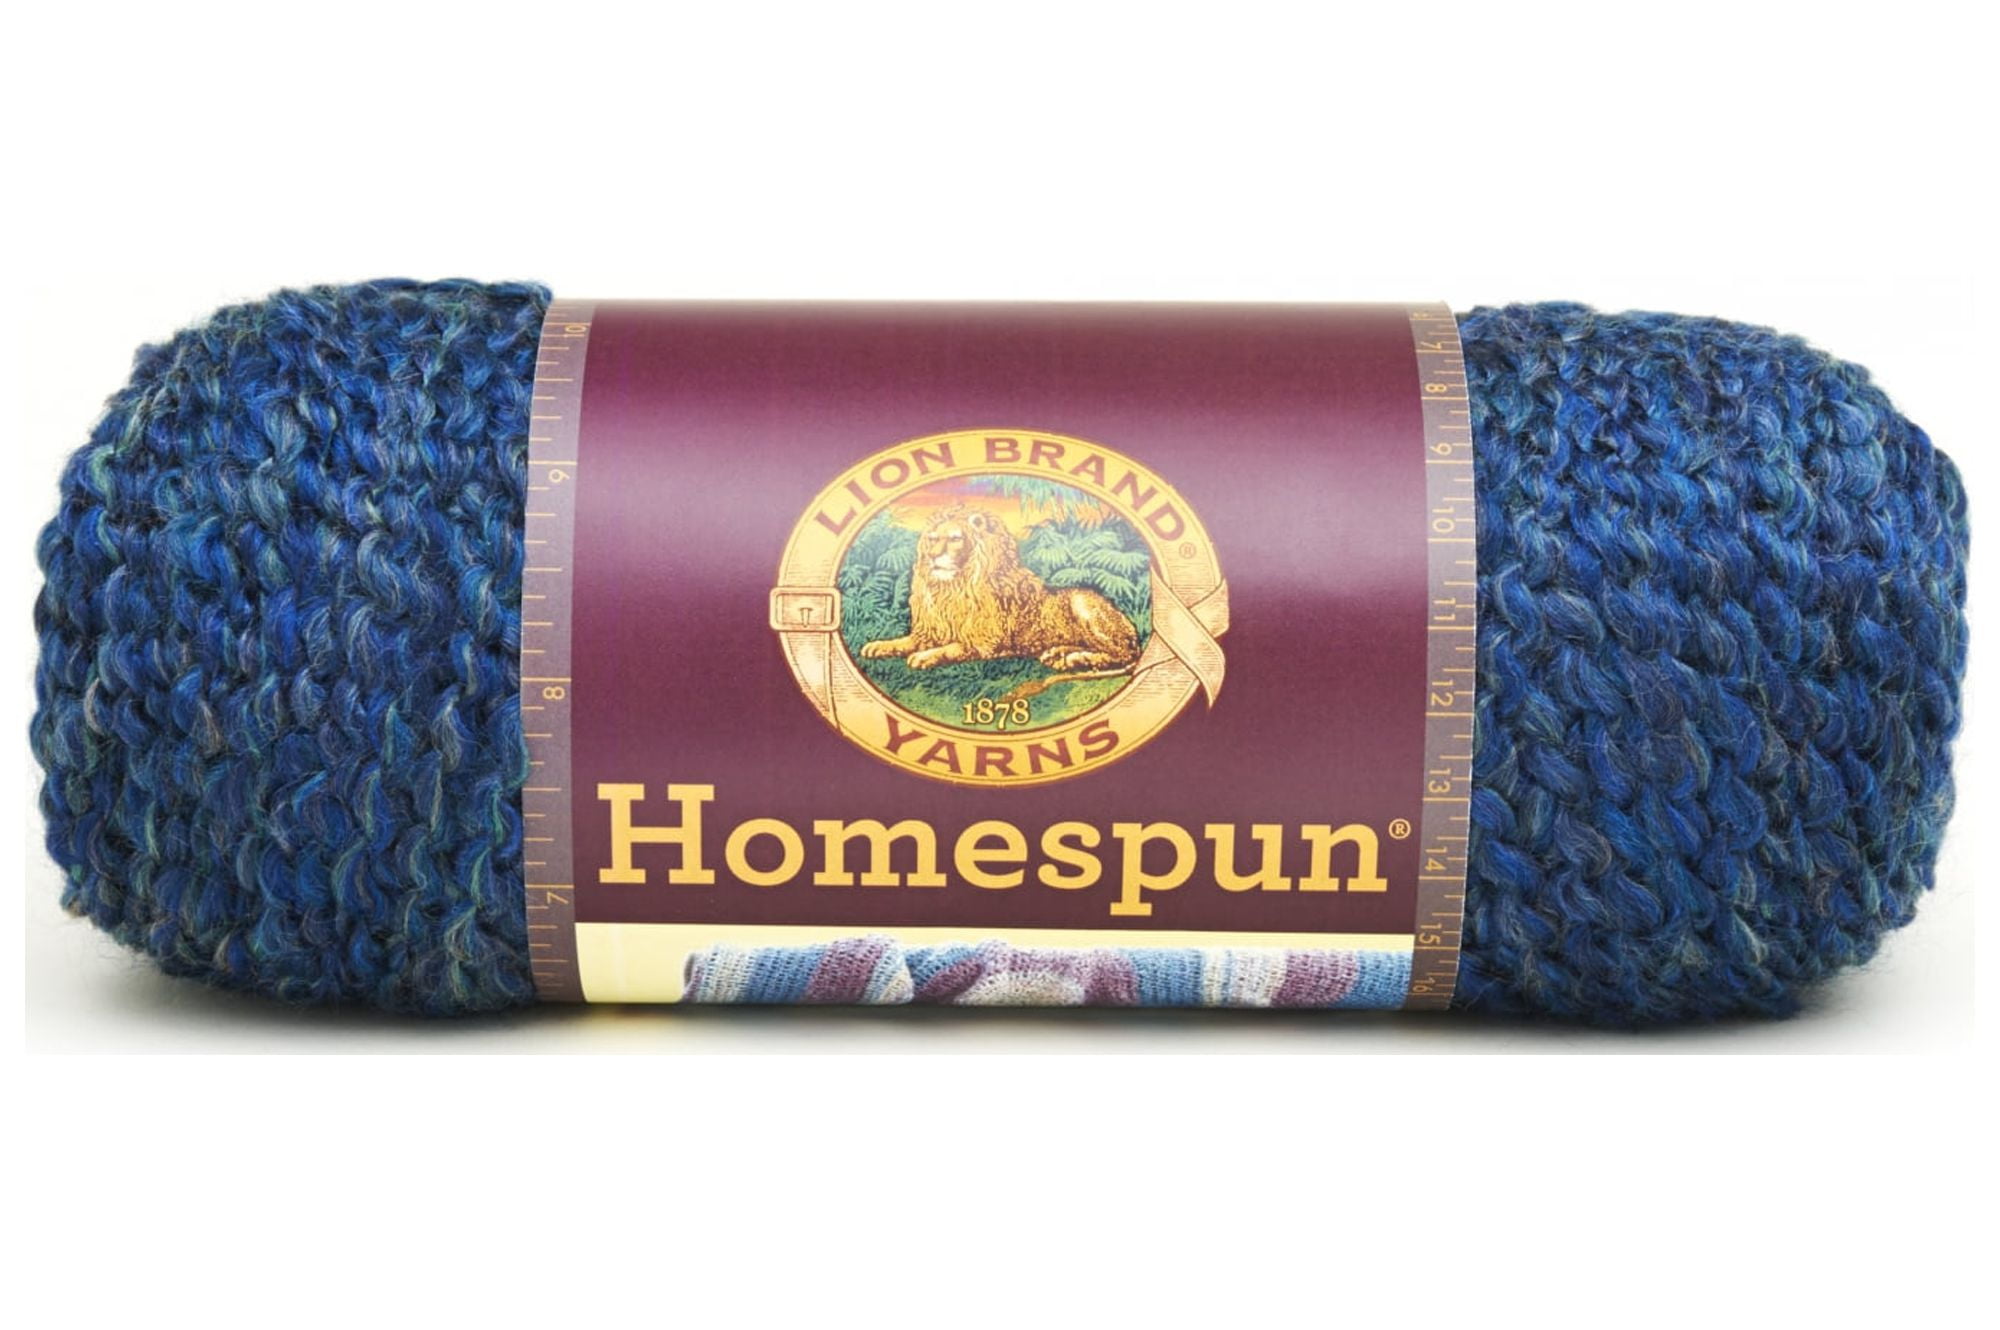 Washing Homespun Yarn – Berry Lake Fiber Arts